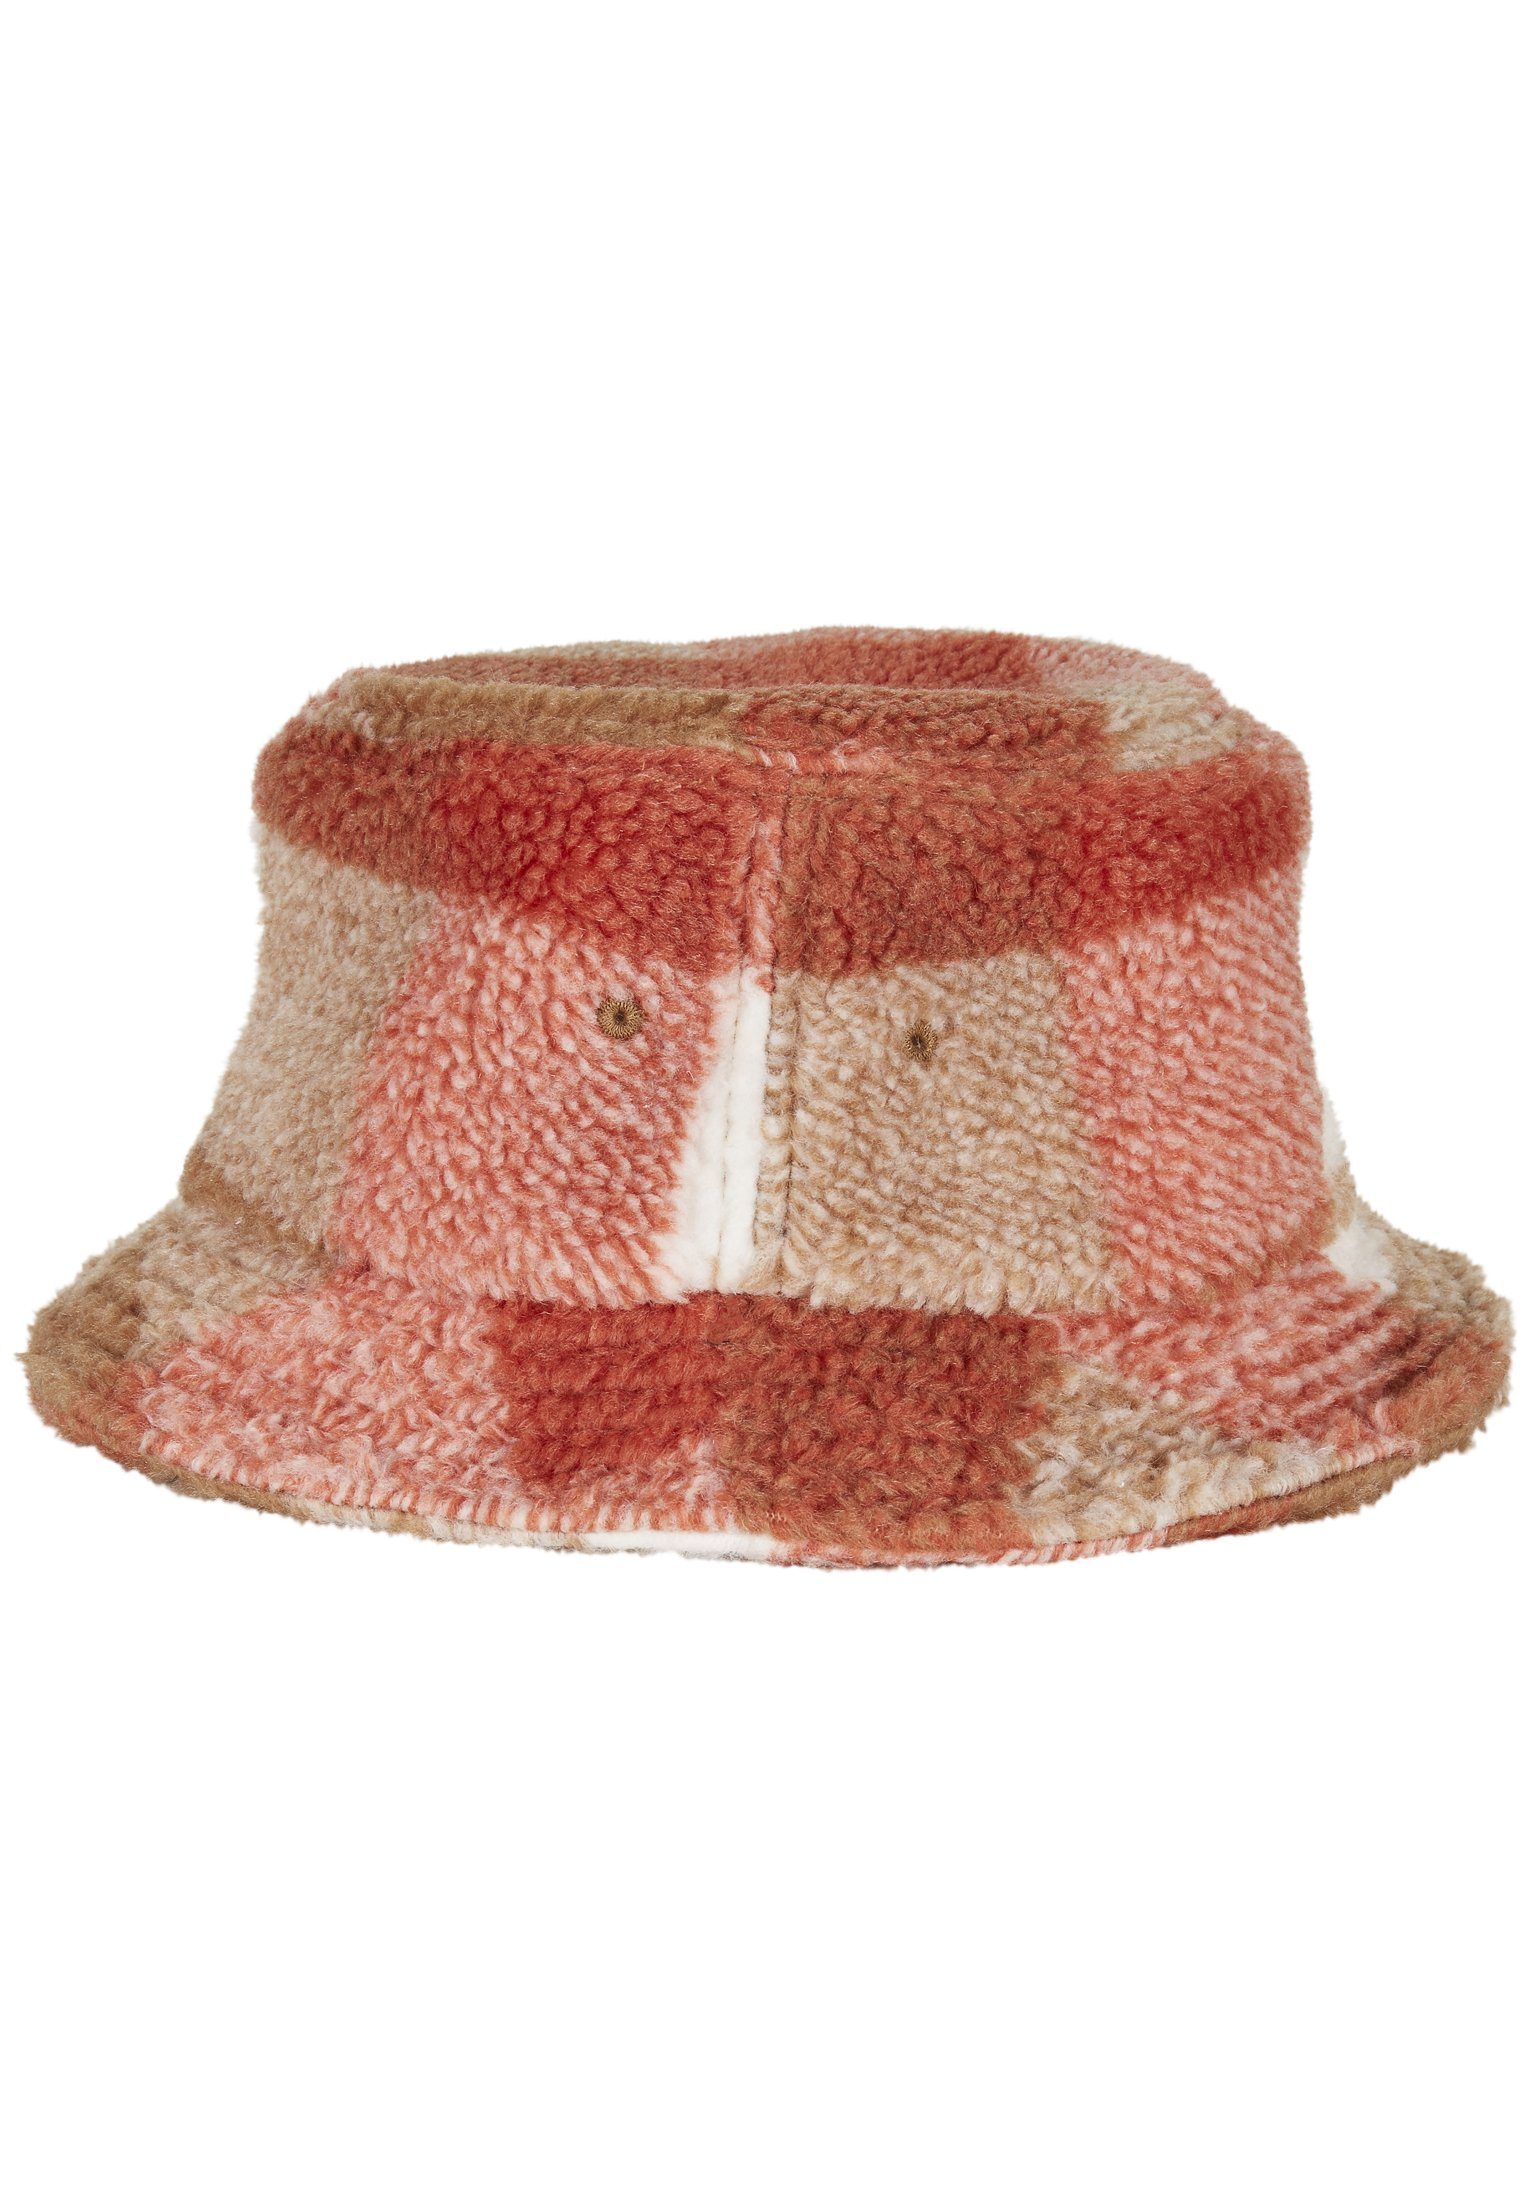 Bucket Flexfit Cap Check Sherpa Bucket Hat Hat Flex whitesand/toffee